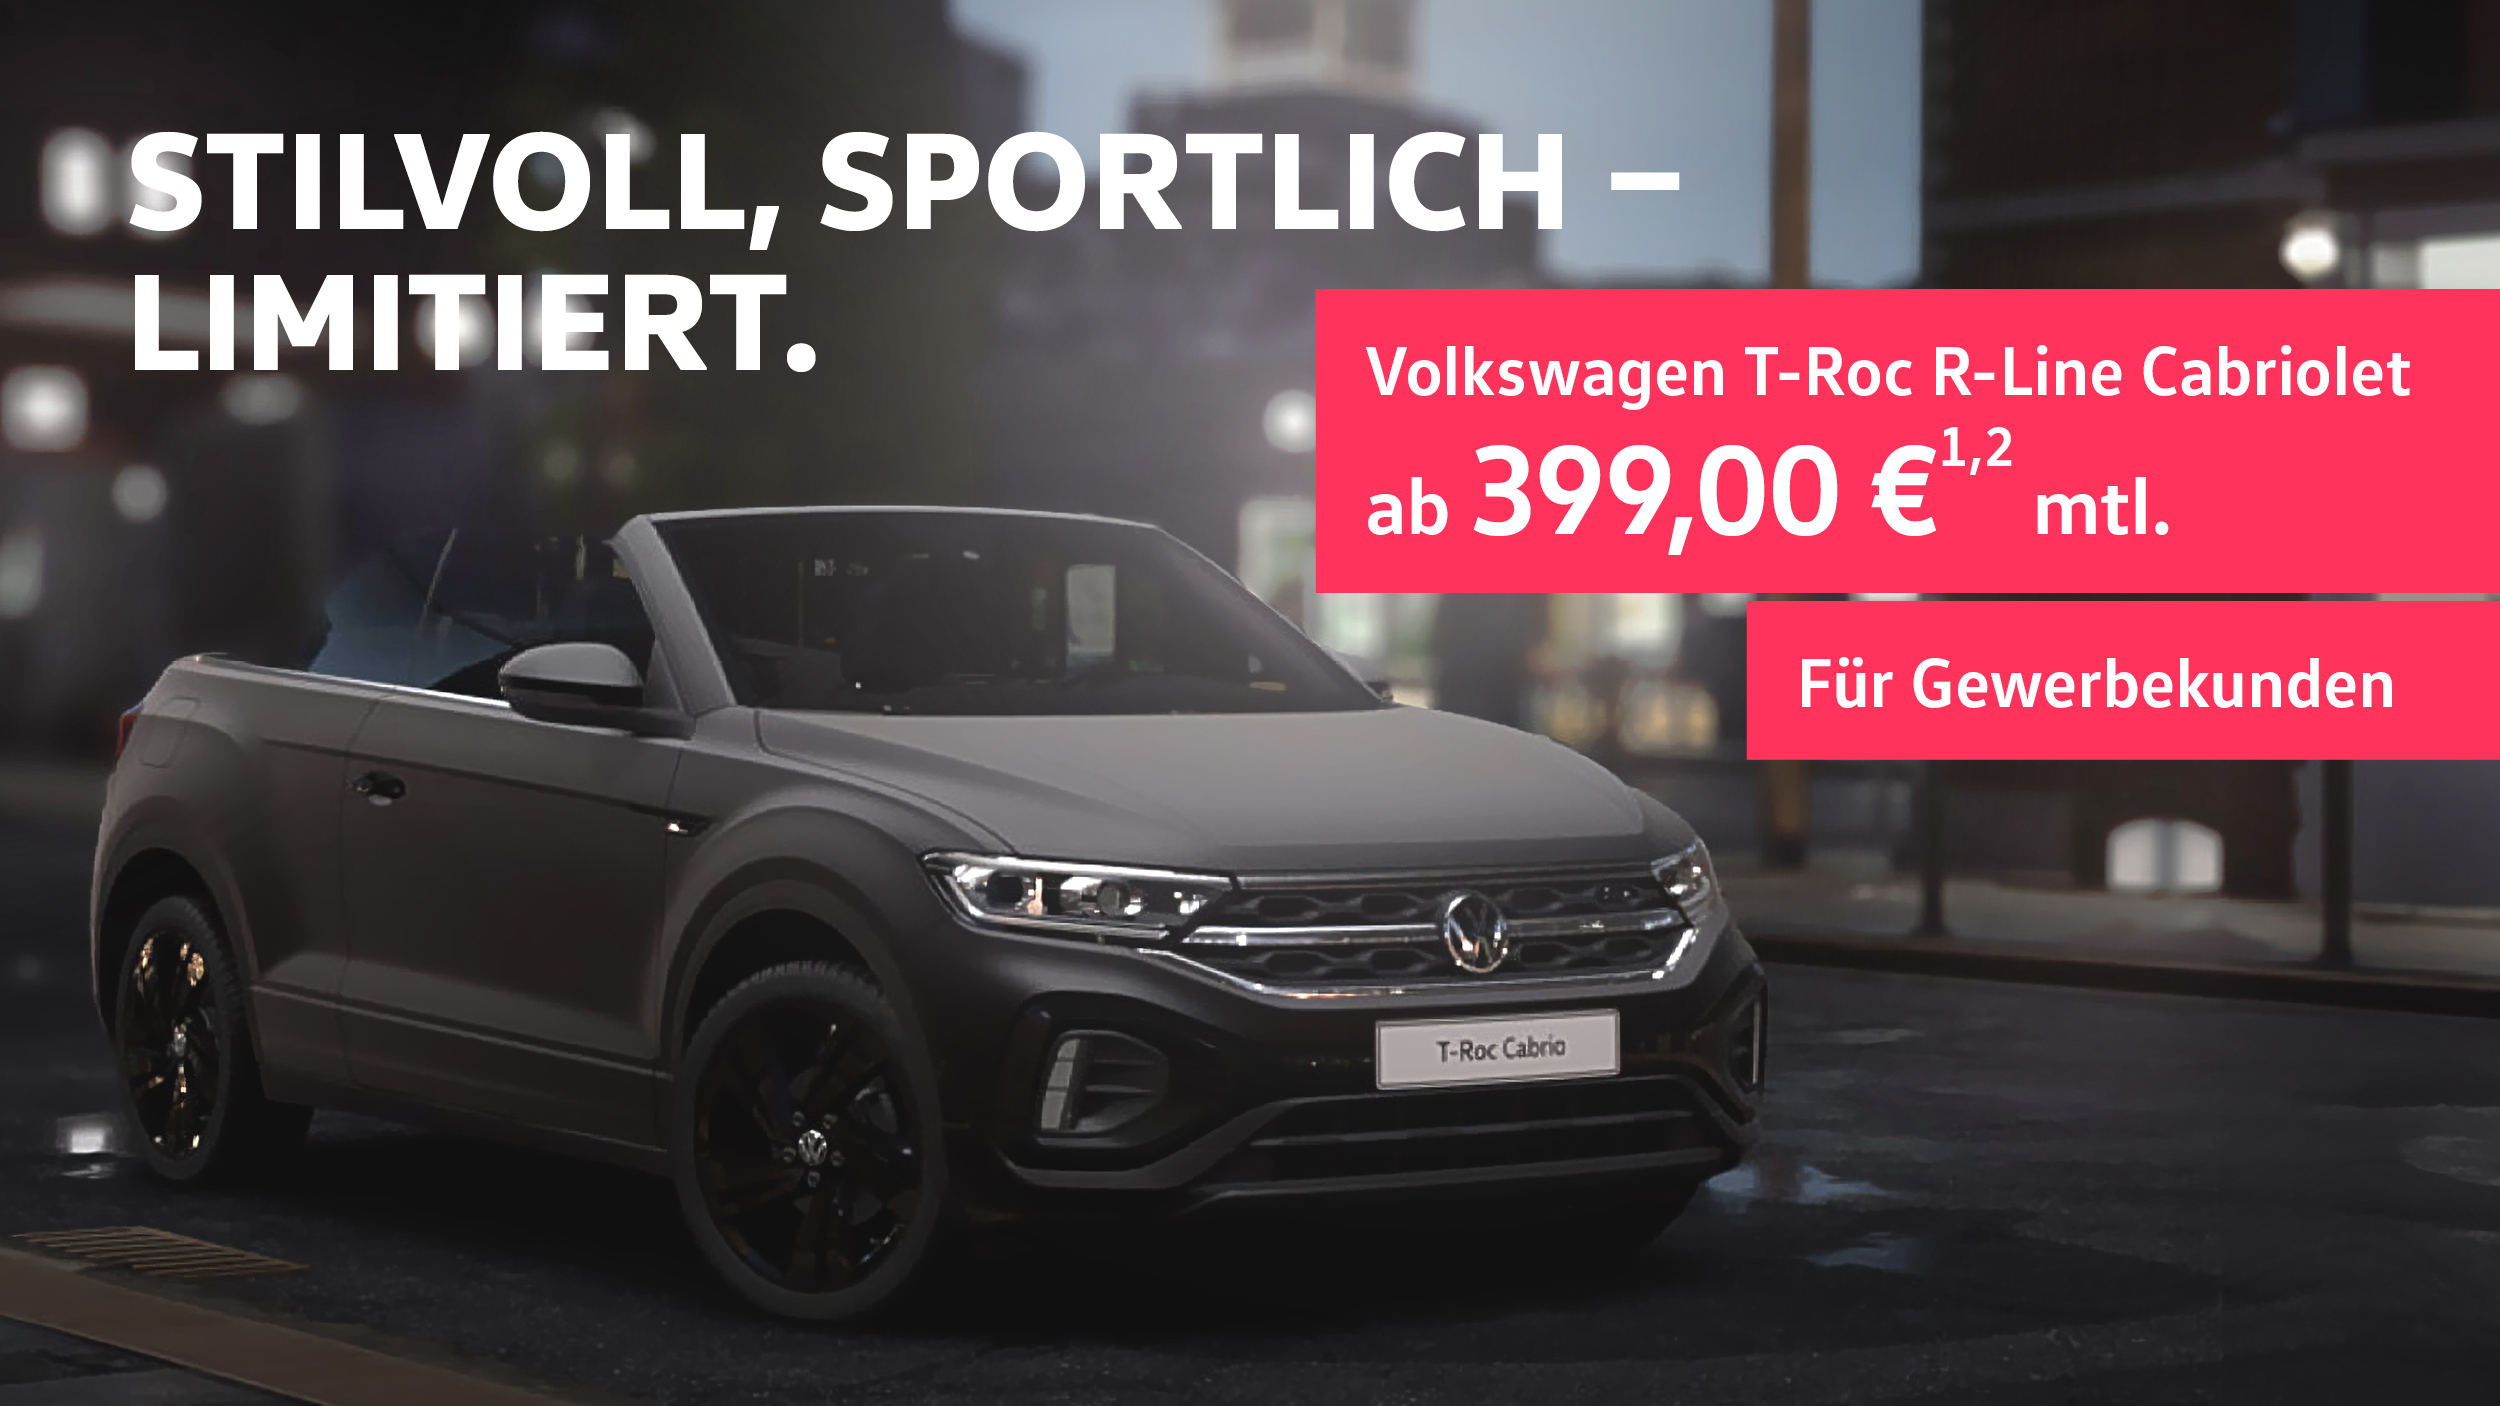 Mattgrau und sportlich - VW T-Roc Cabriolet - NEWS